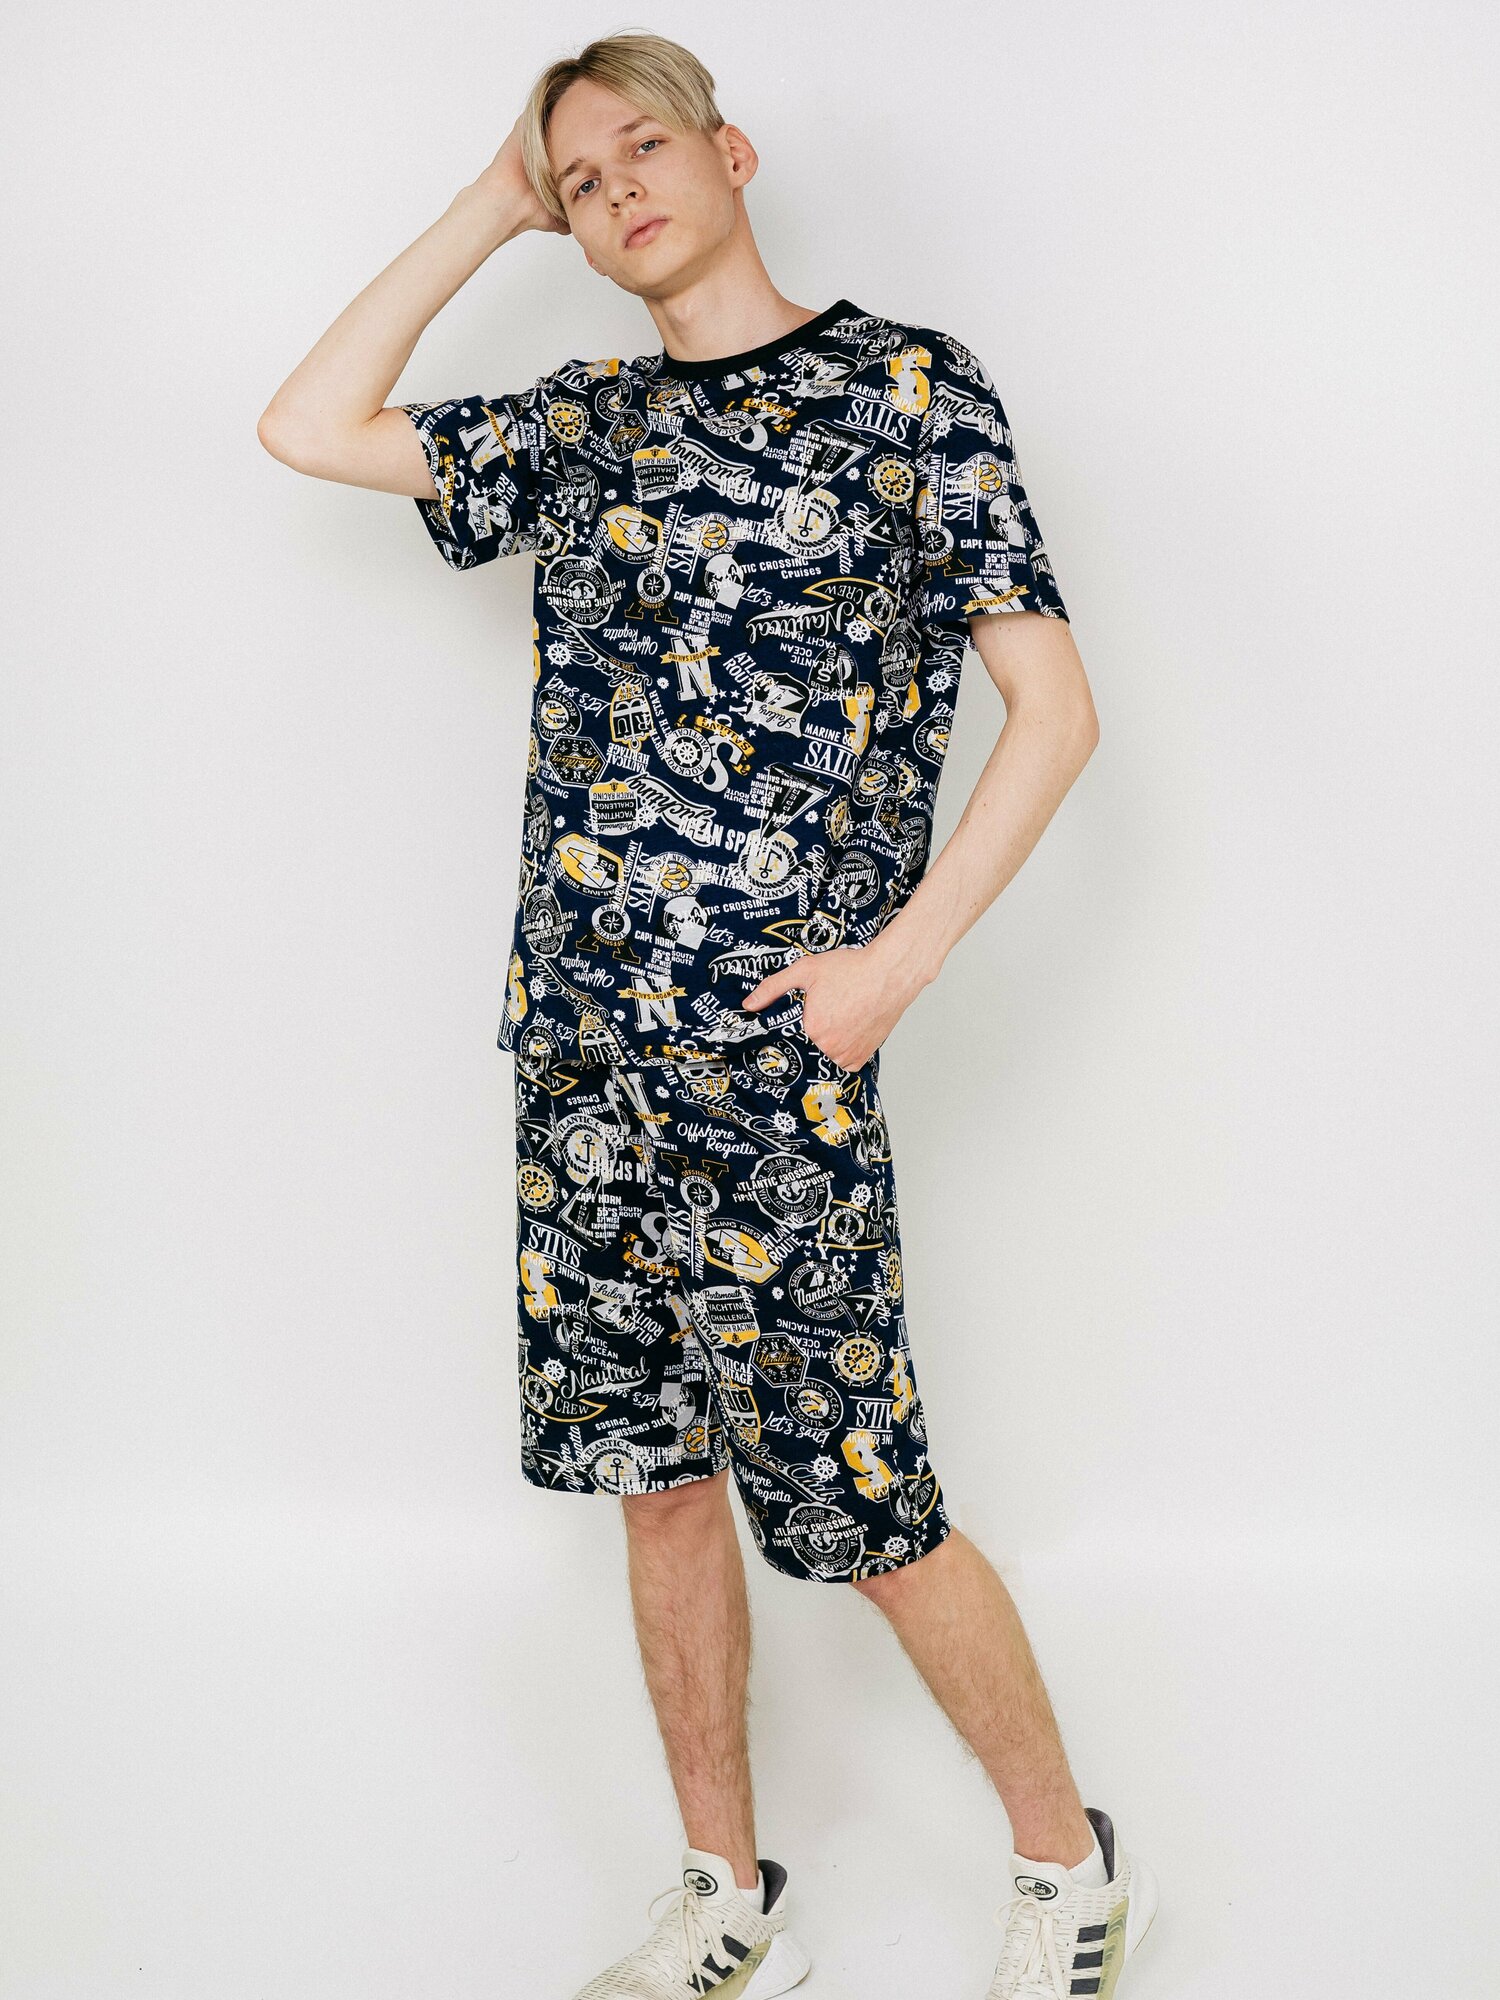 Мужская пижама, мужской пижамный комплект ARISTARHOV, Футболка + Шорты, Синий серый, размер 52 - фотография № 7